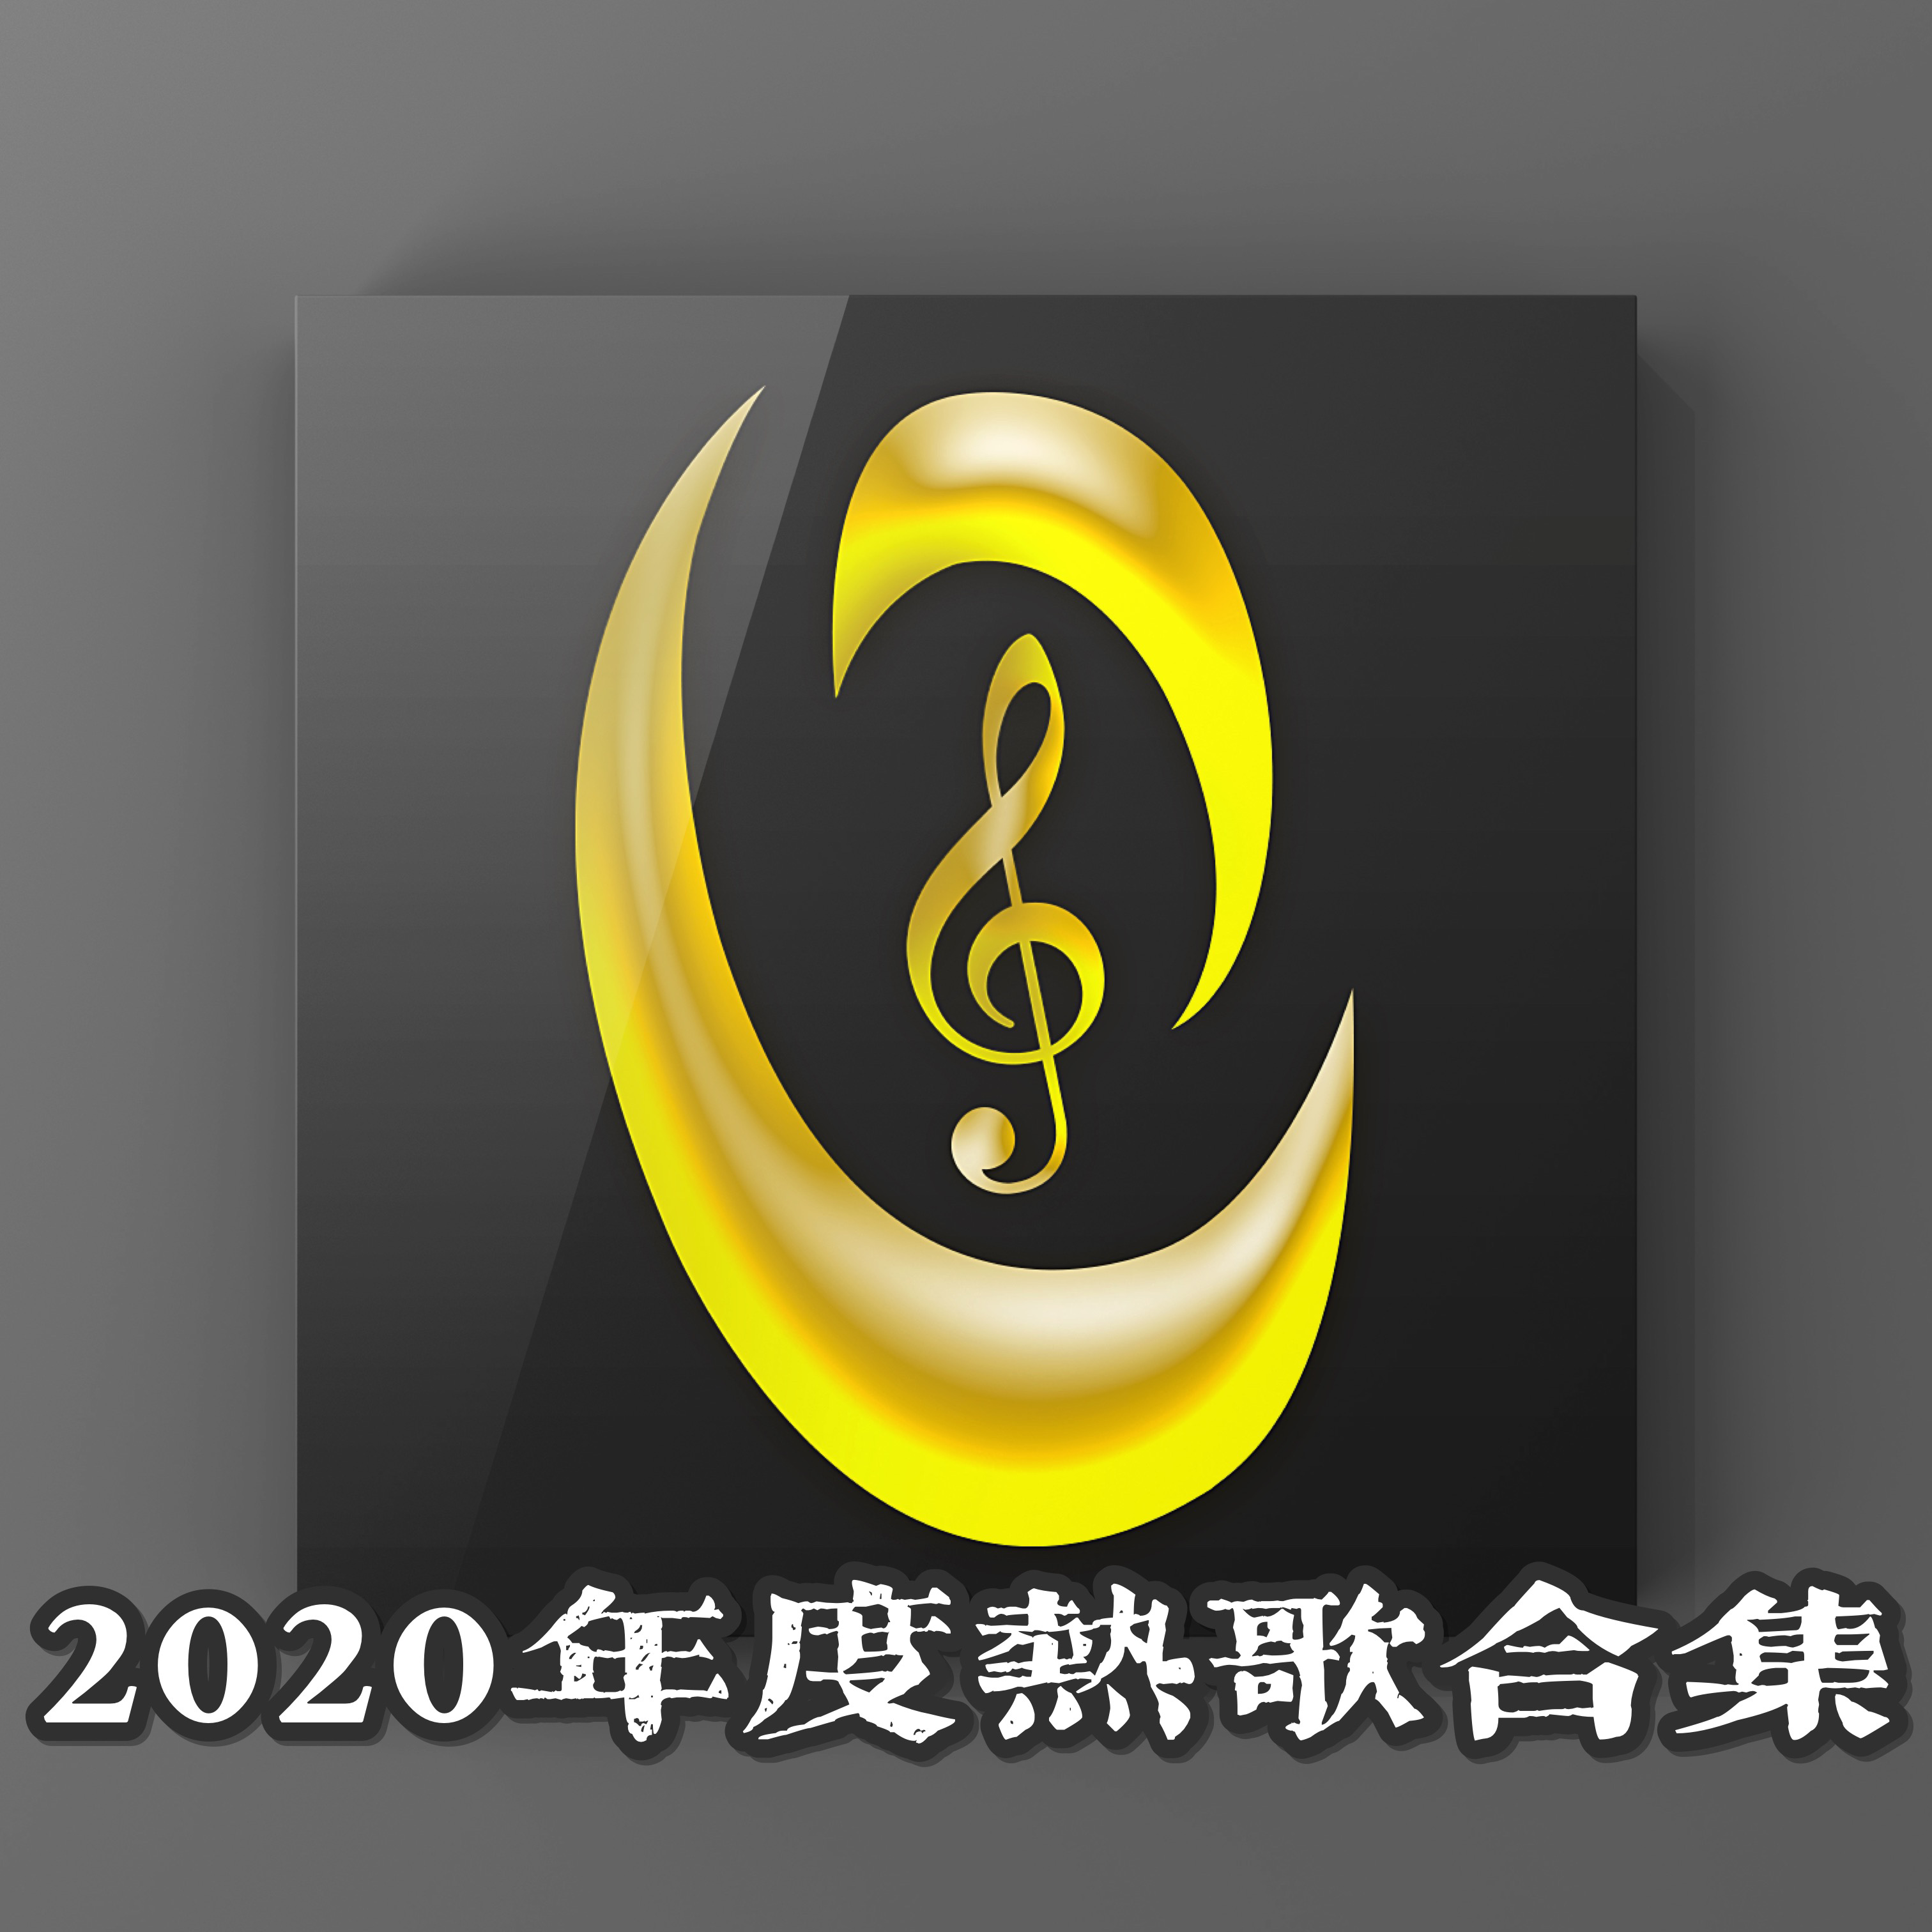 2020年度之声大集合-钢琴谱